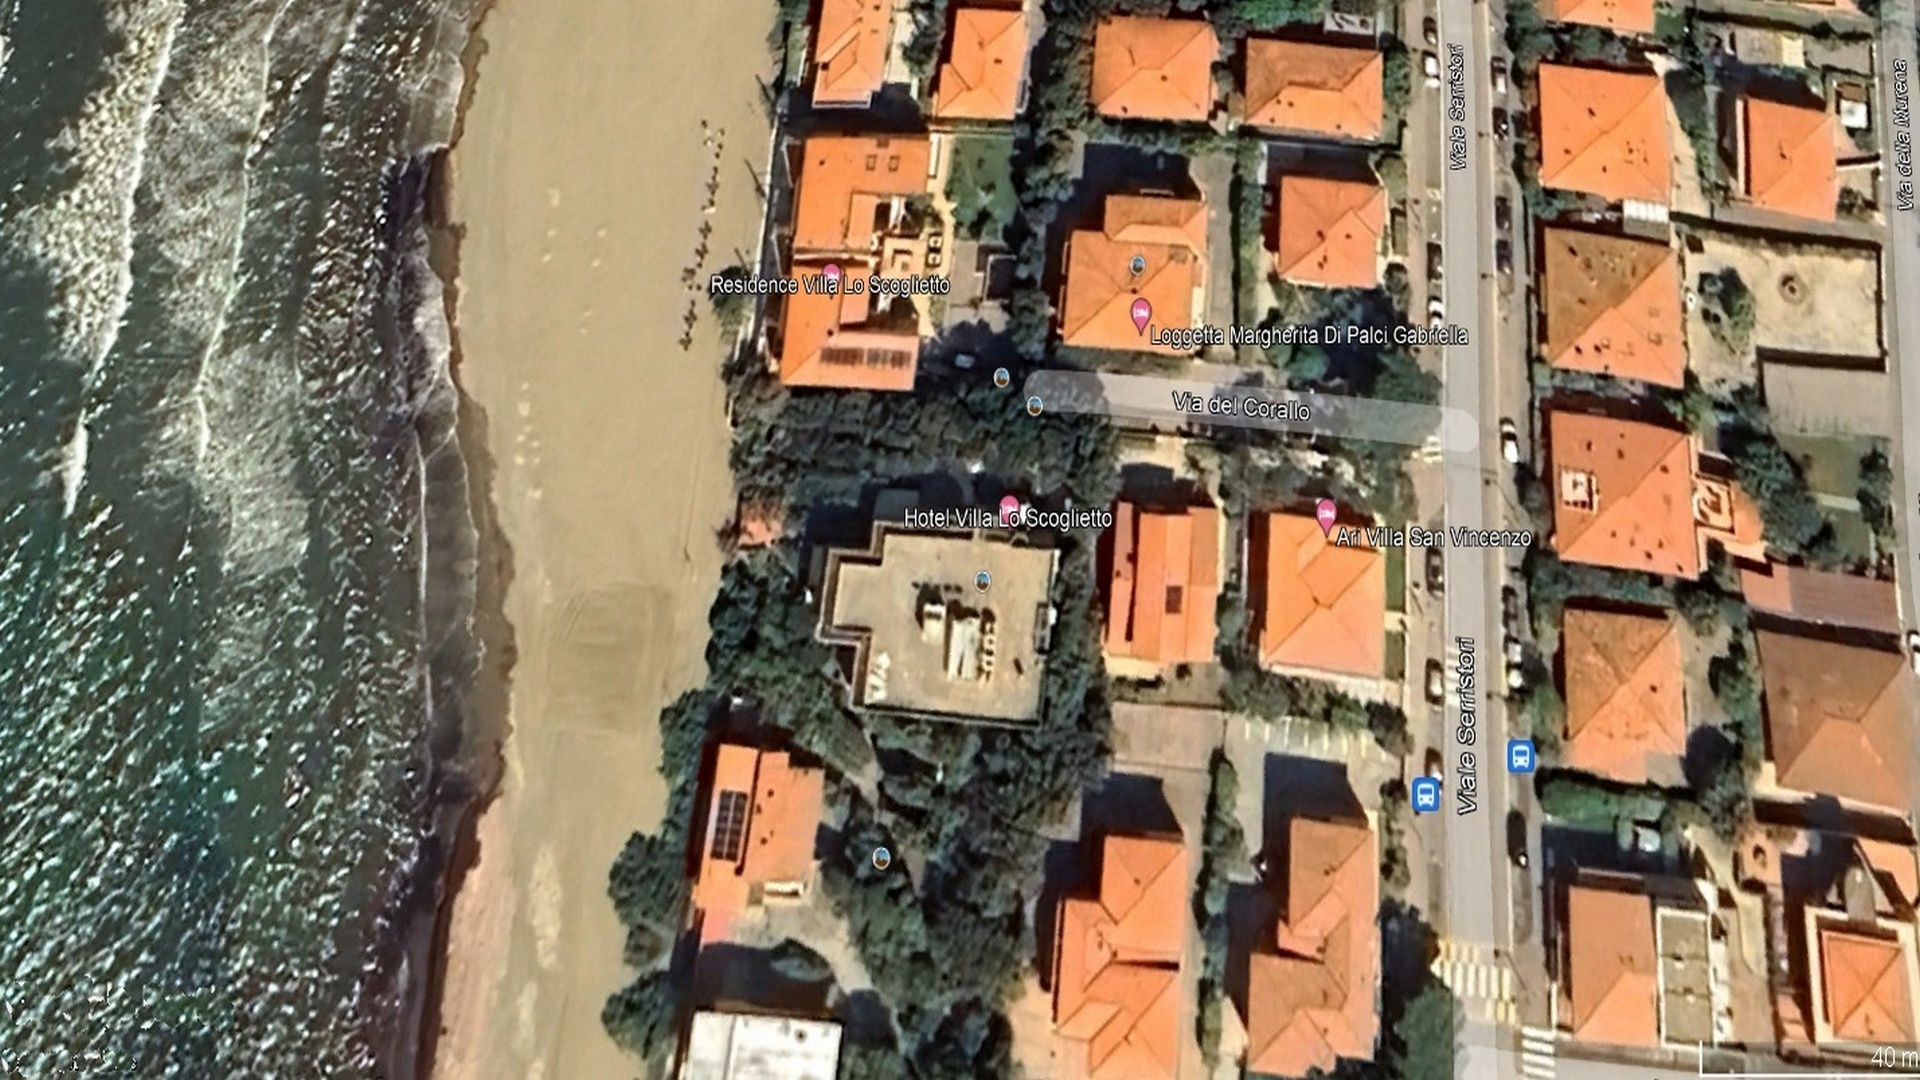 The location of Villa Ari